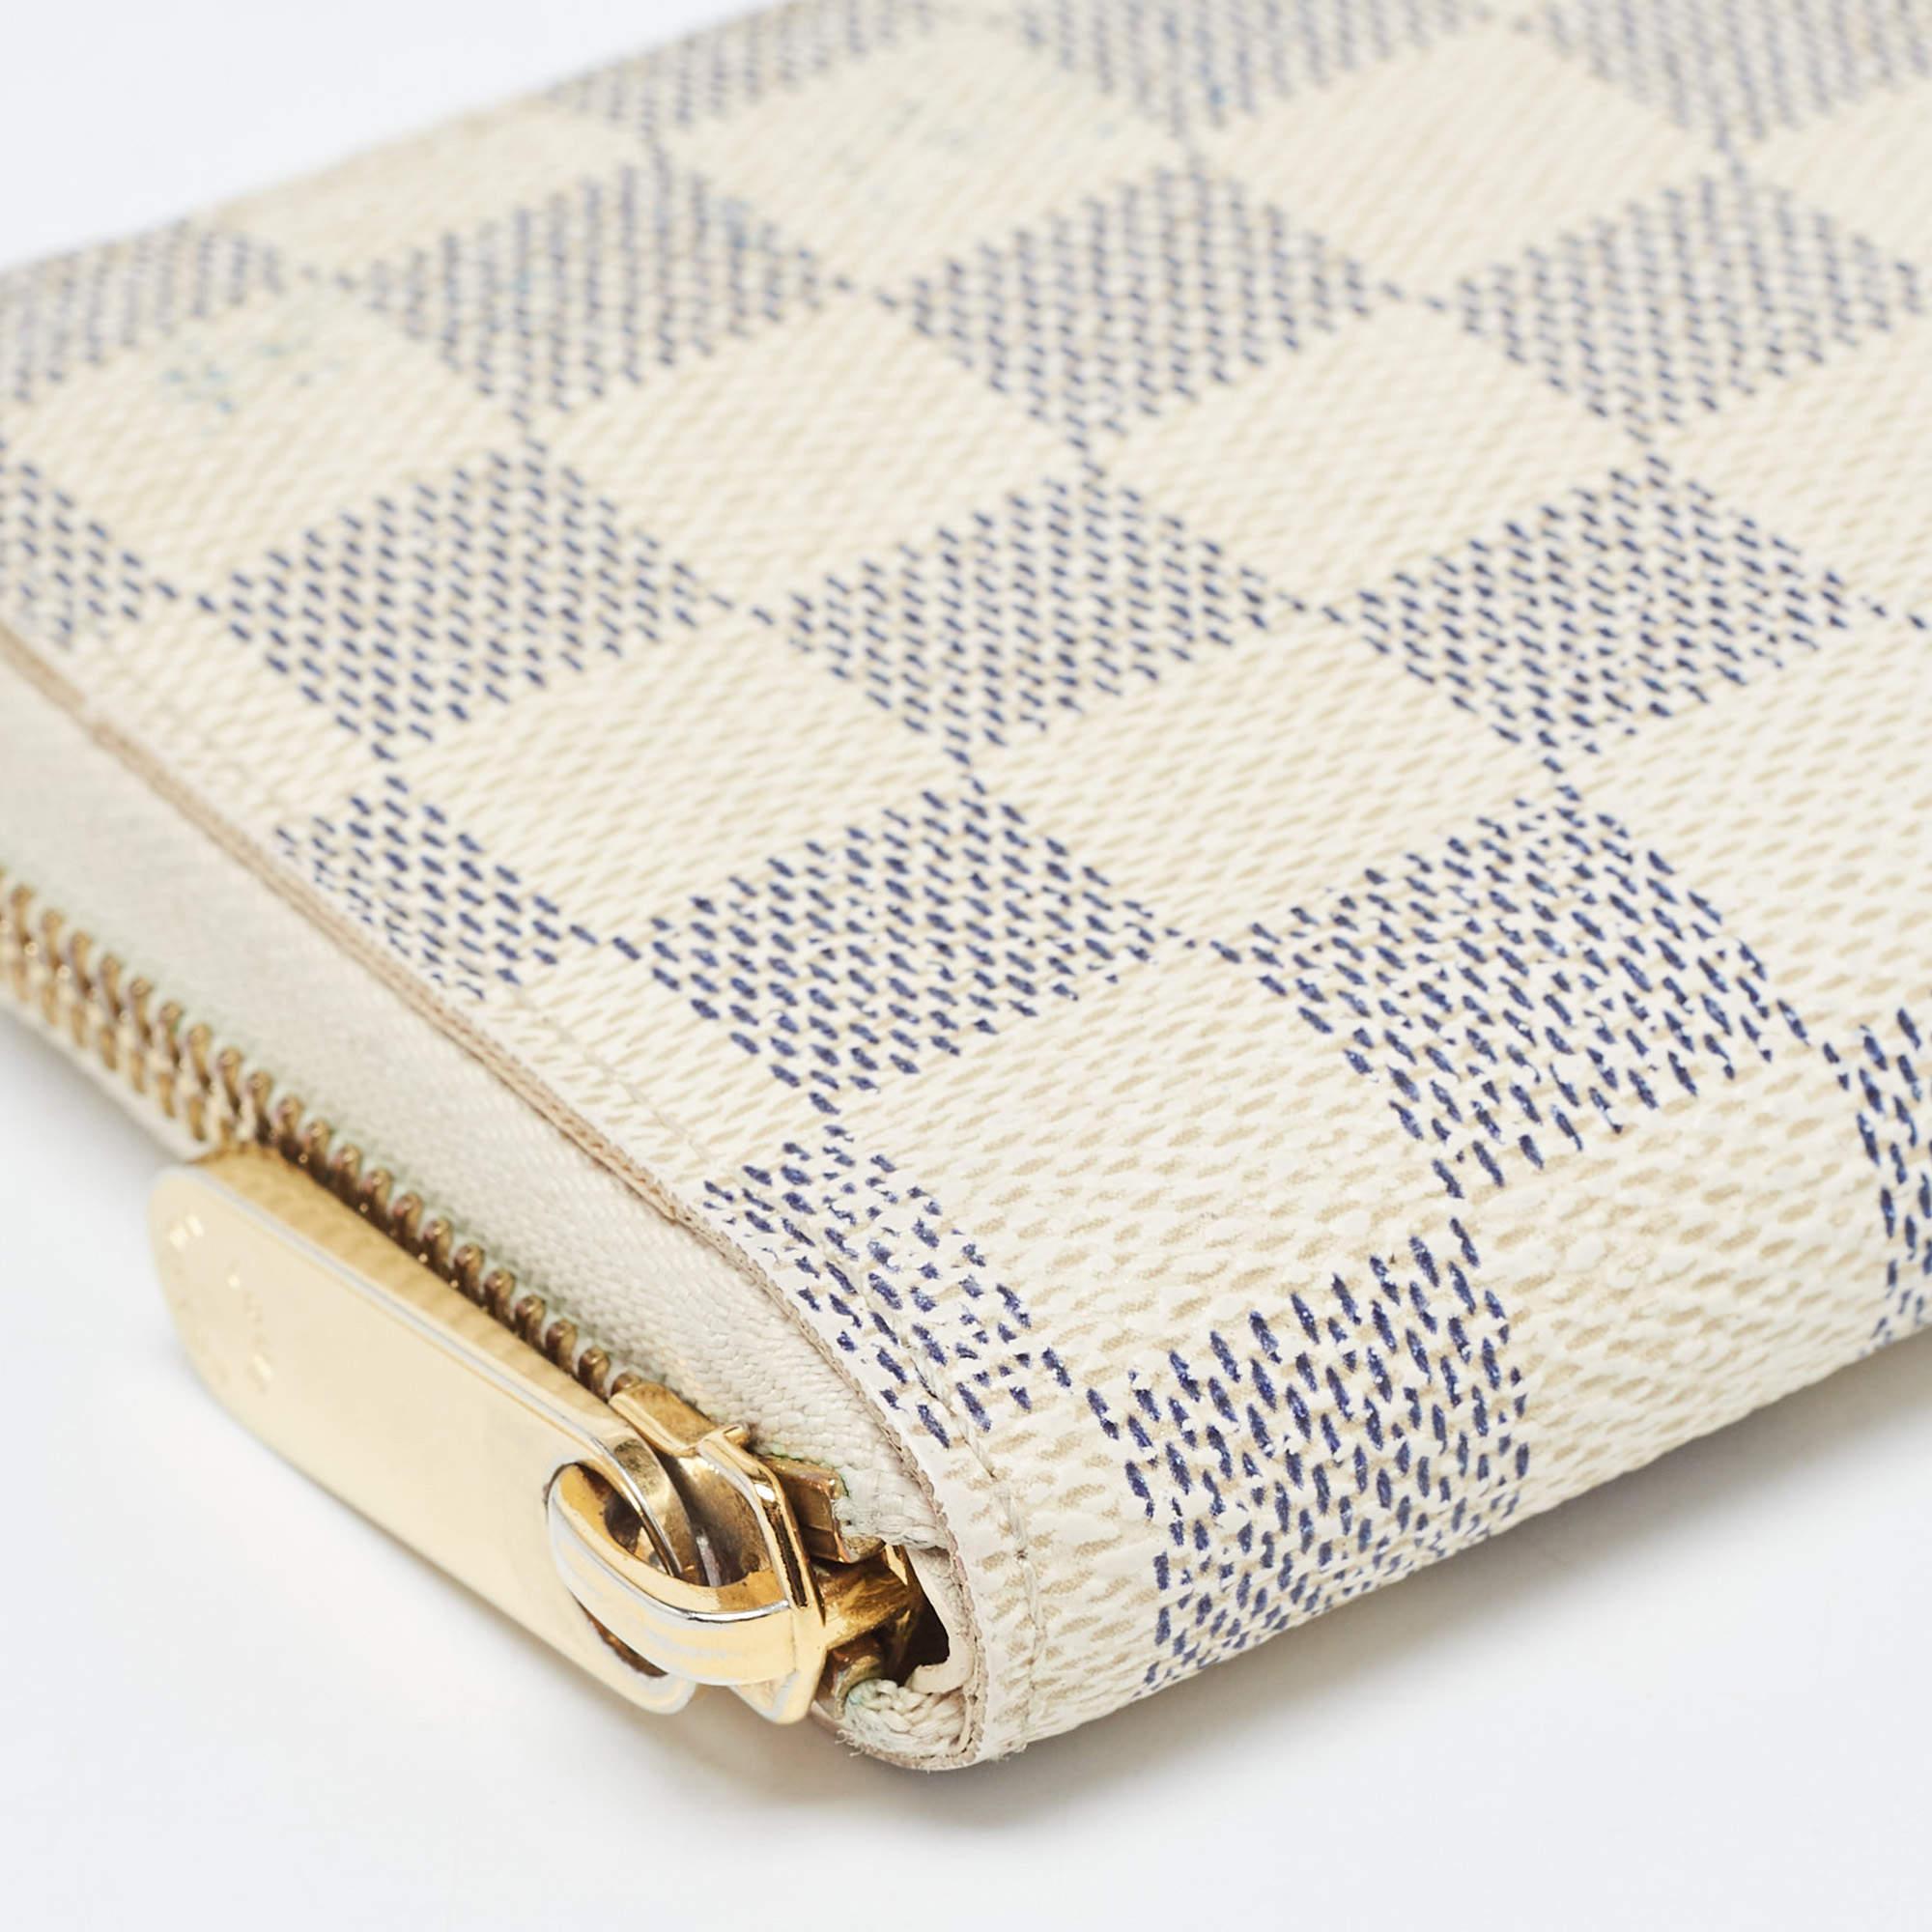 Louis Vuitton Damier Azur Canvas Compact Zippy Wallet In Good Condition For Sale In Dubai, Al Qouz 2